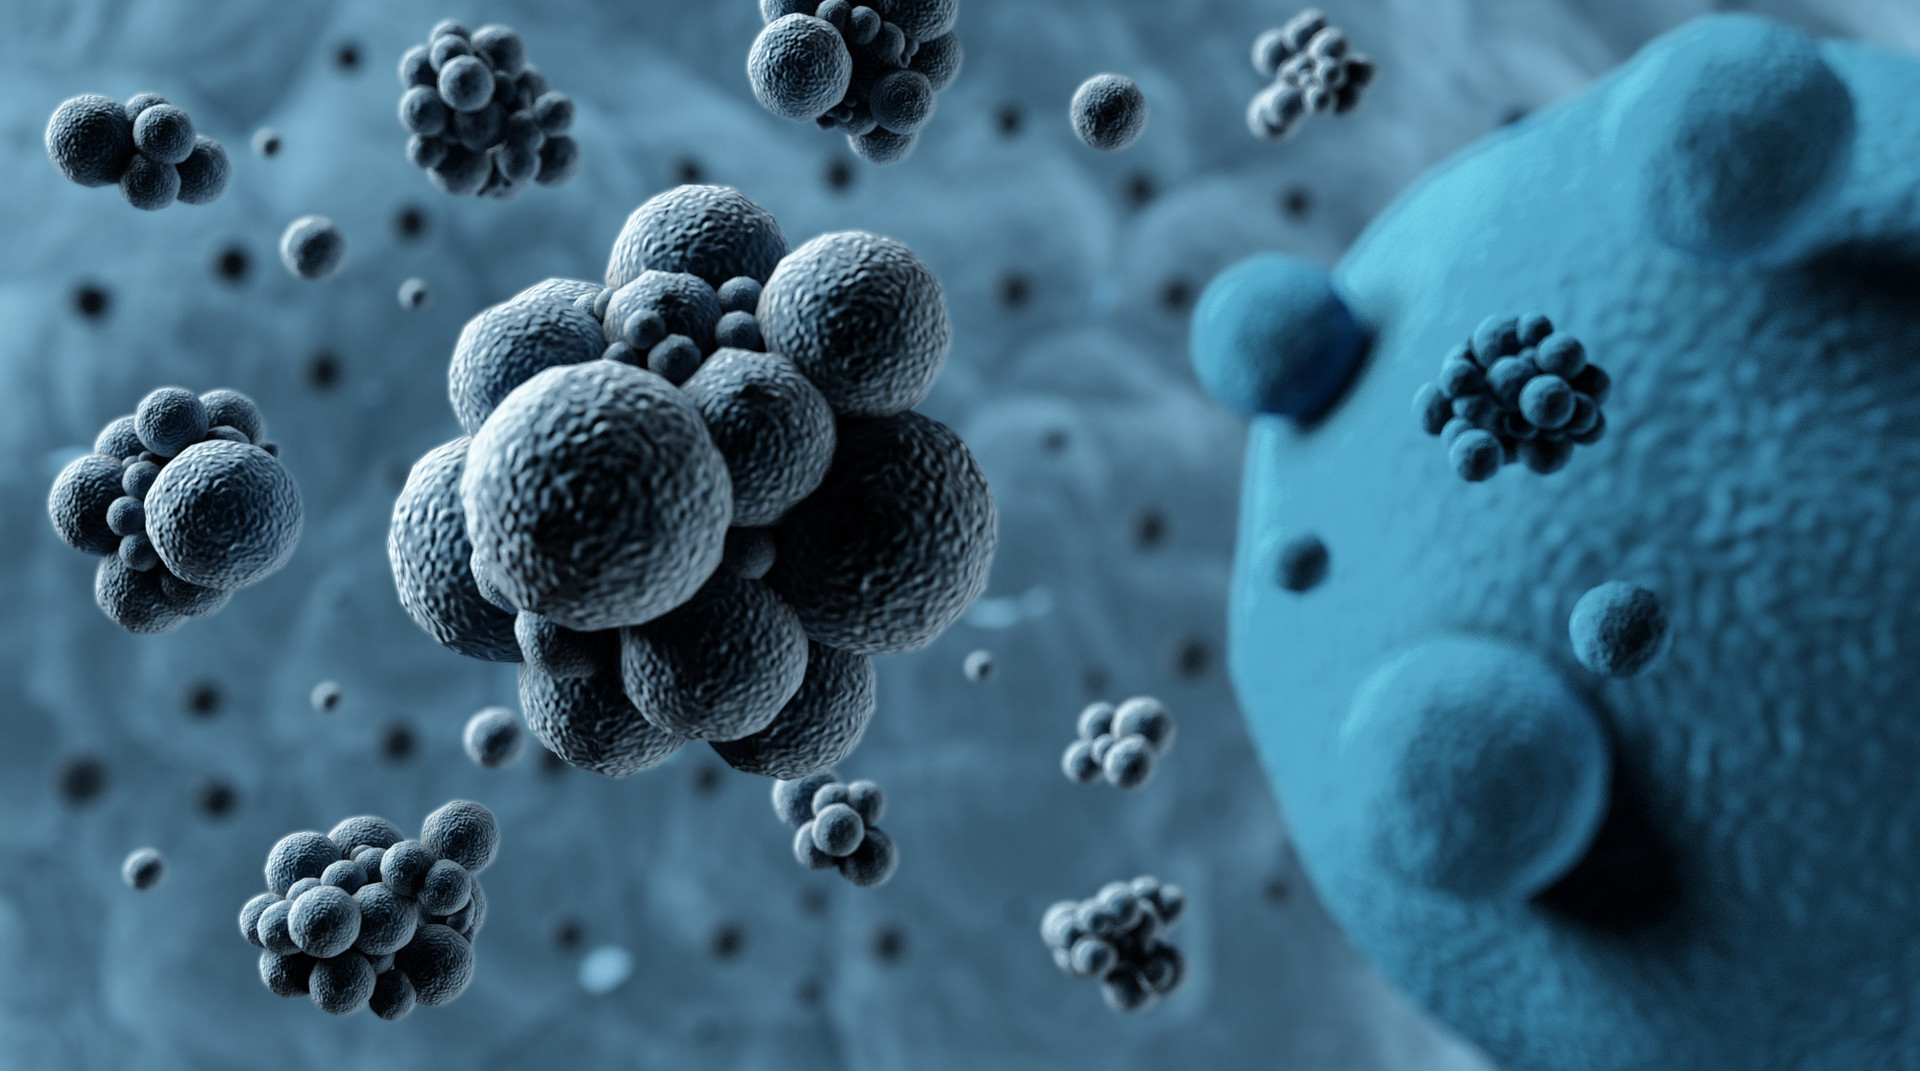 HeLa细胞培养污染，黑色圆形污染物 - 细胞技术讨论版 -丁香园论坛